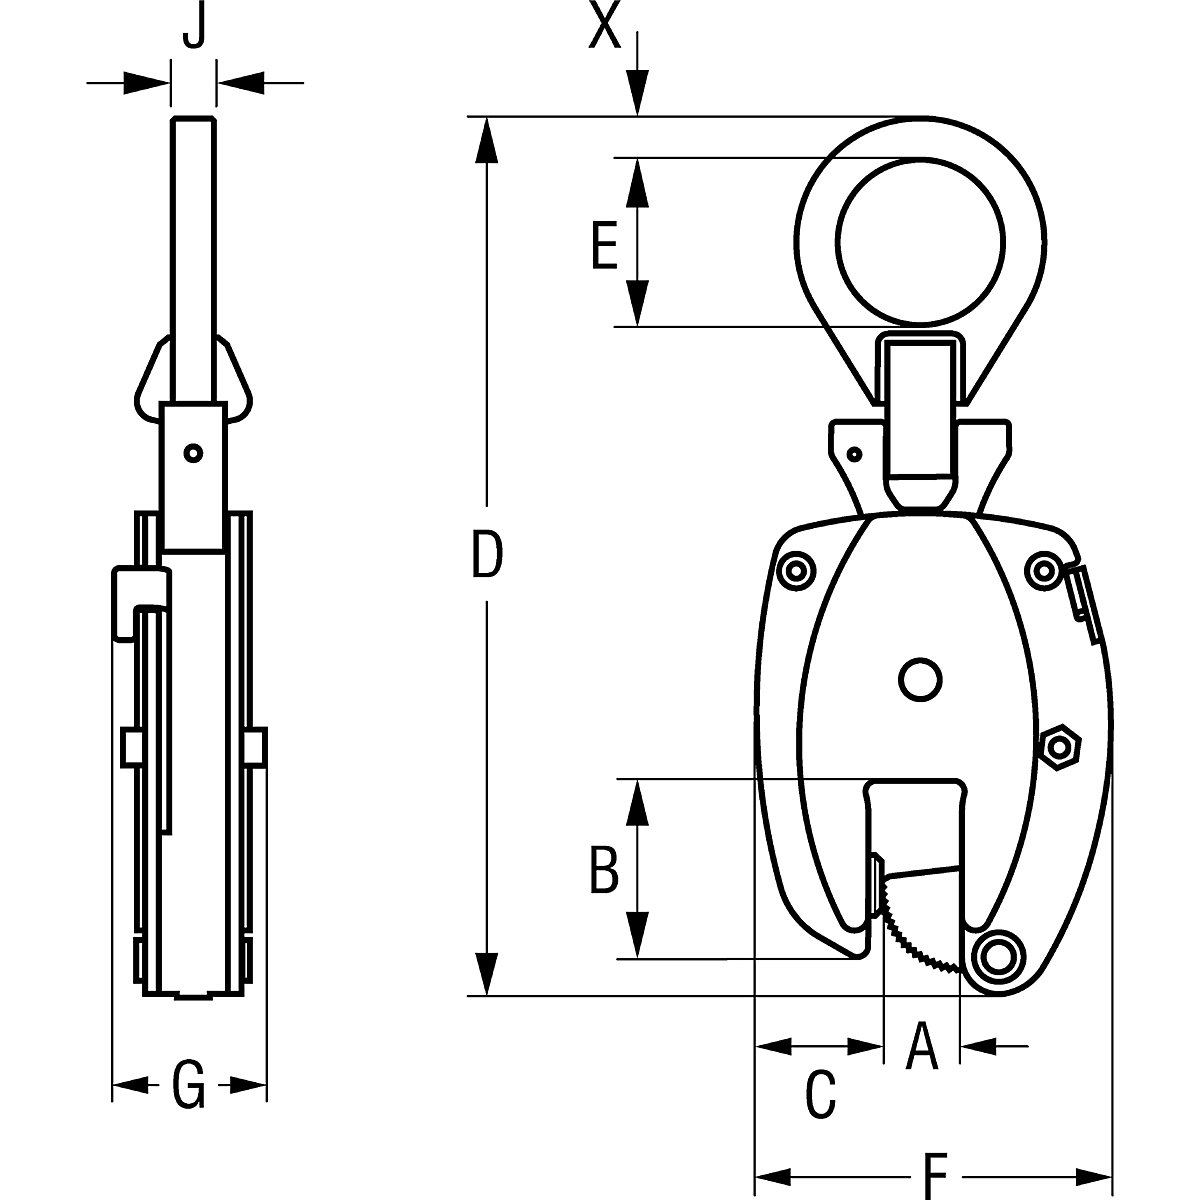 Clemă de suspensie model KL, utilizare pe verticală – Pfeifer (Imagine produs 6)-5